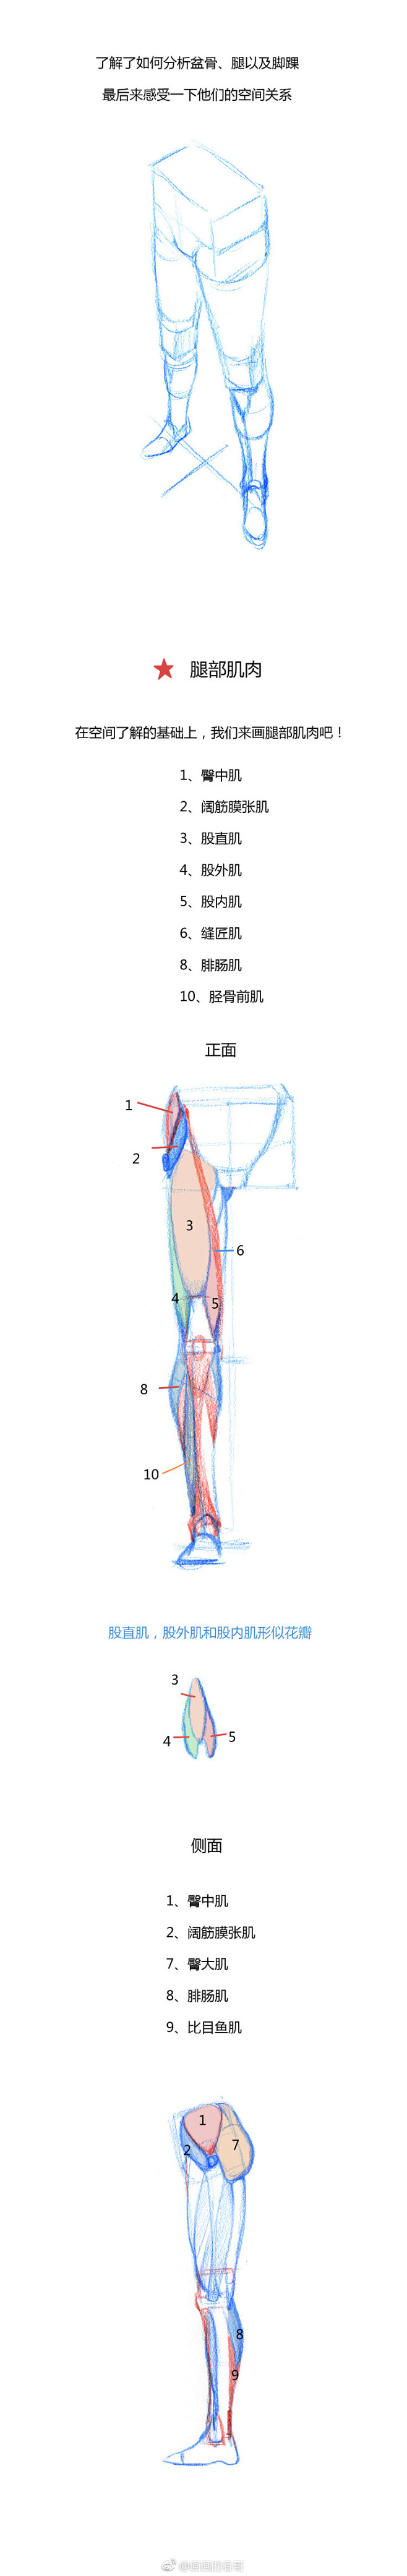 #春哥的绘画课室# 条漫第五弹：腿部结构...